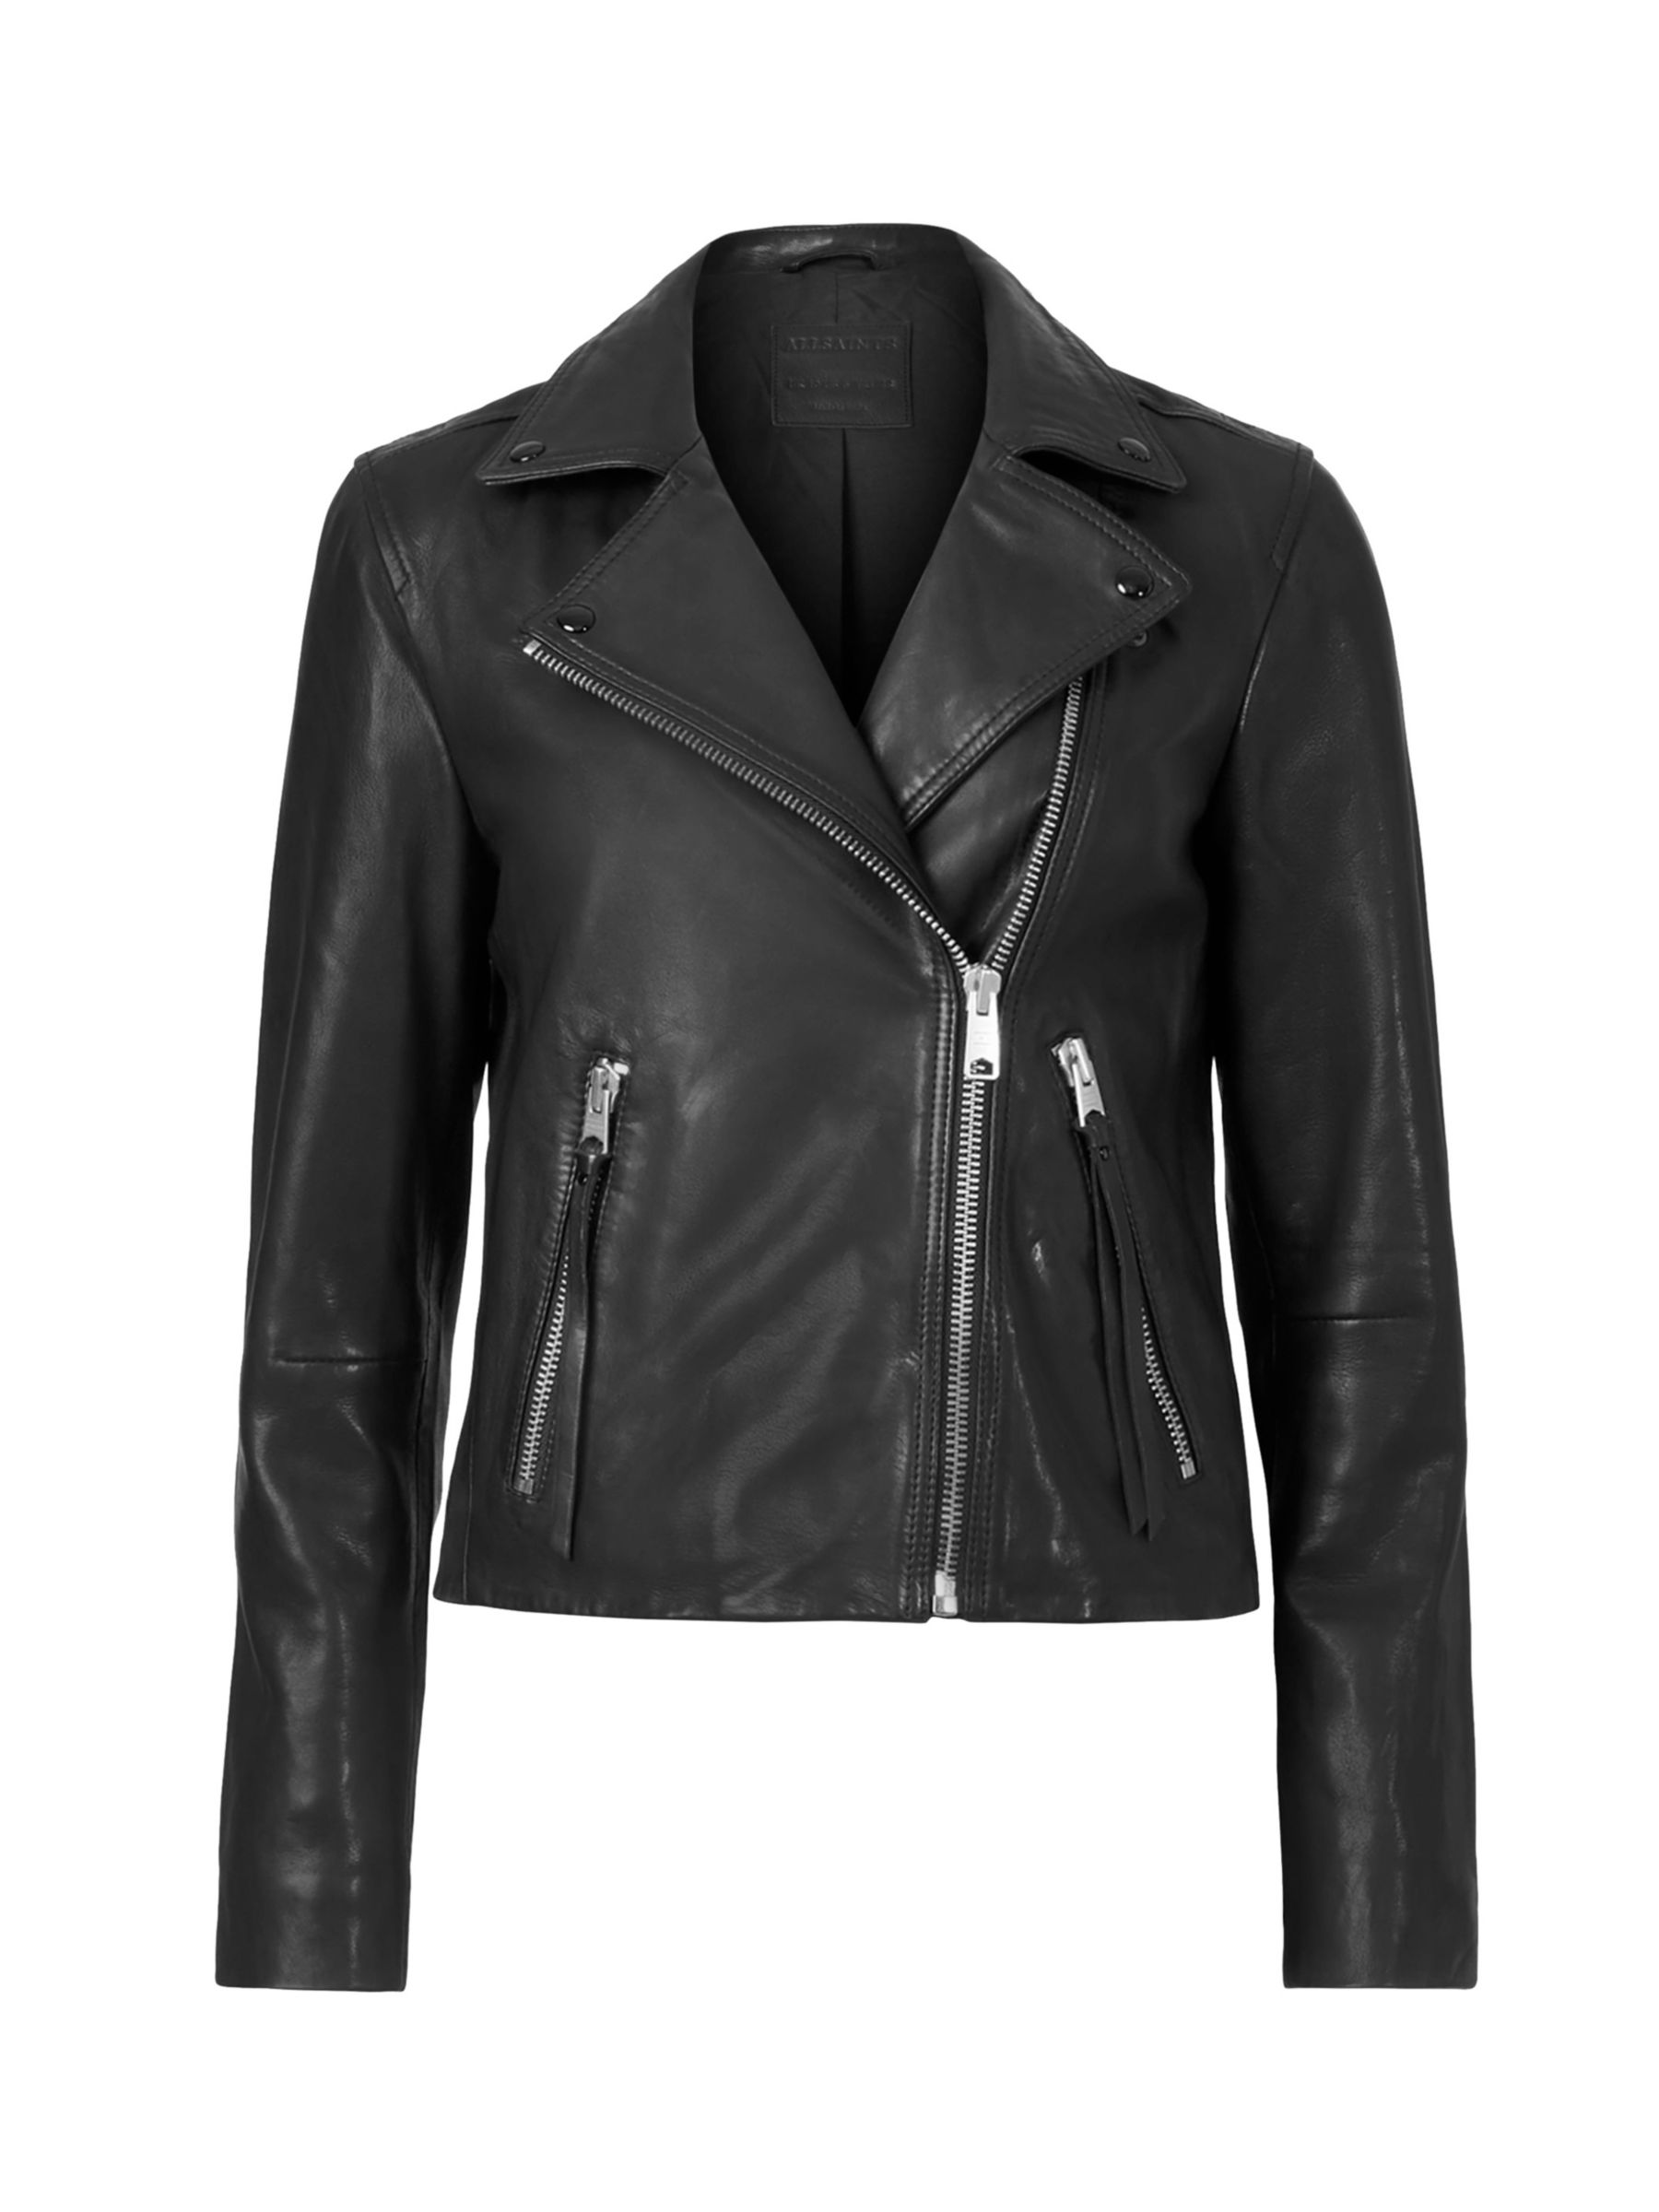 Buy AllSaints Dalby Leather Biker Jacket Online at johnlewis.com